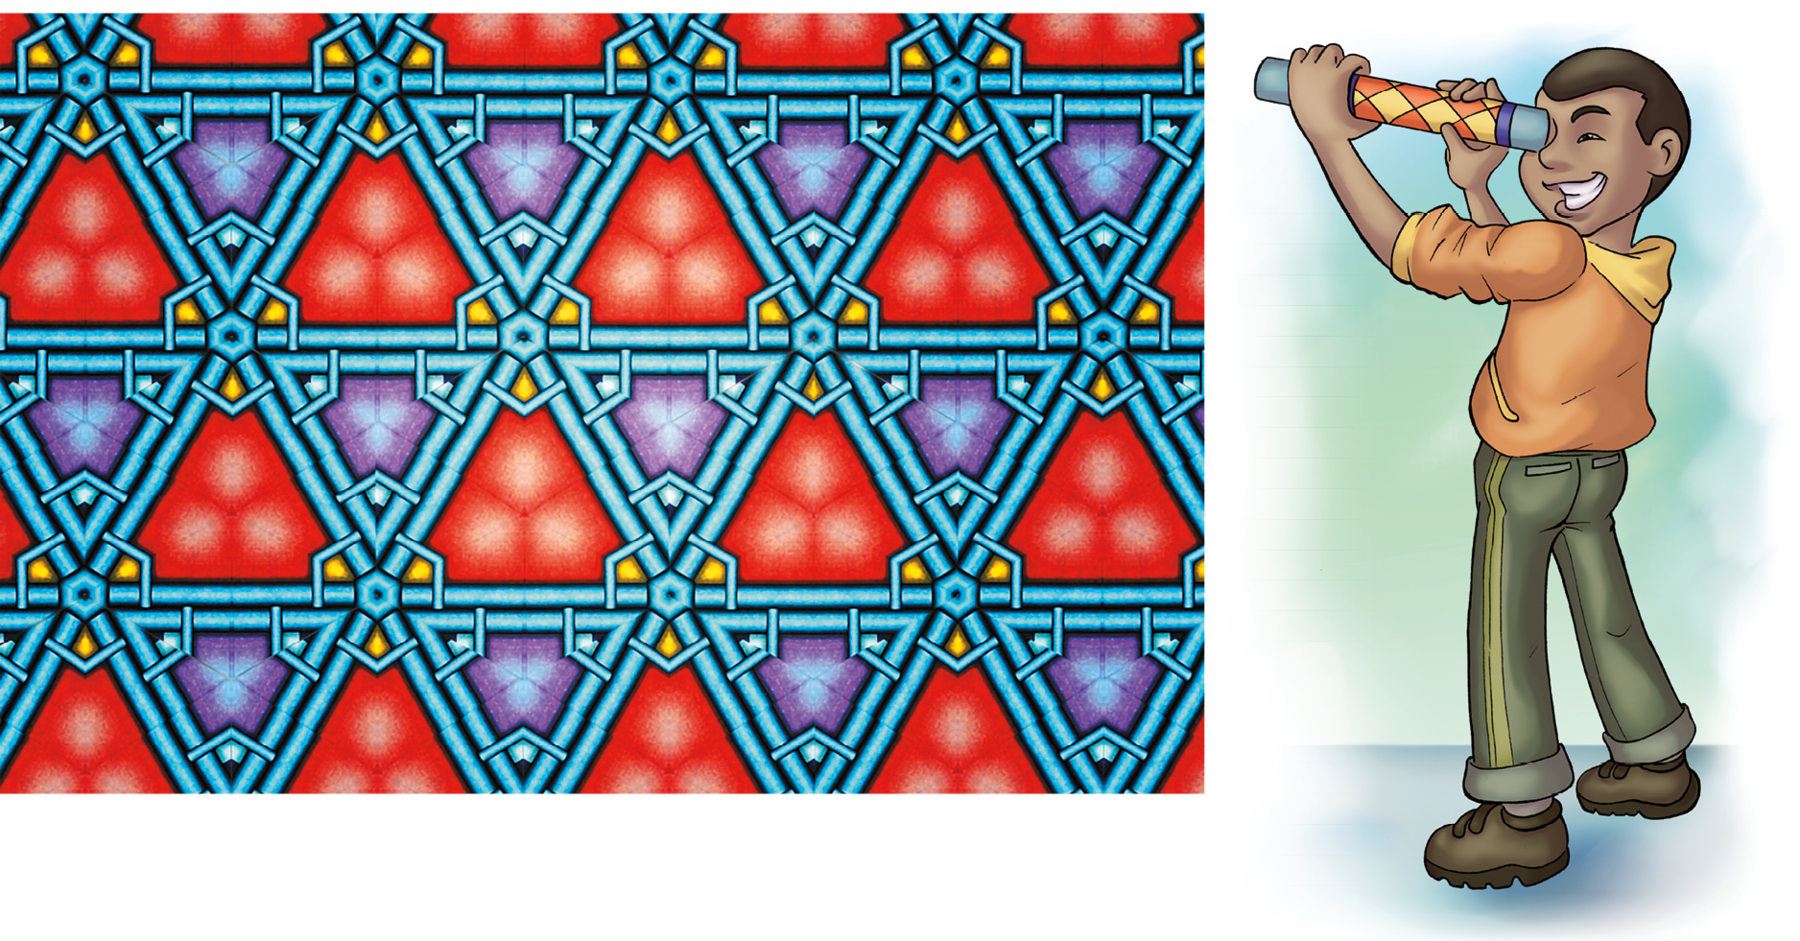 Ilustração. Triângulos vermelhos e roxos intercalados. Na junção dos triângulos, um hexágono pequeno. Ao lado, homem de cabelo curto, camisa laranja e calça verde olha a imagem em um caleidoscópio, objeto que lembra uma luneta.